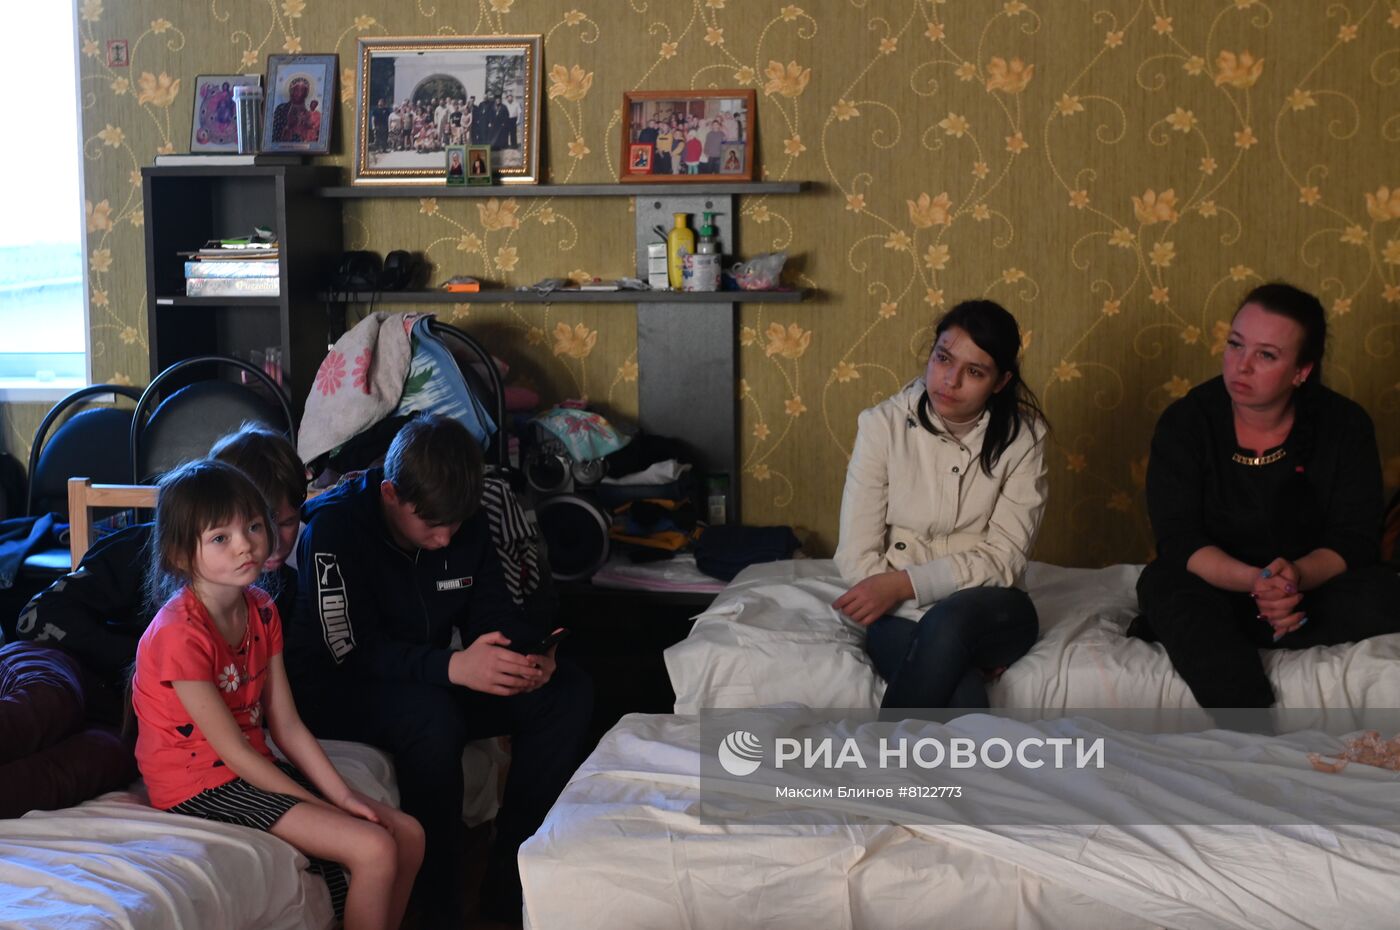 Размещение эвакуированных жителей Донбасса в православном приюте